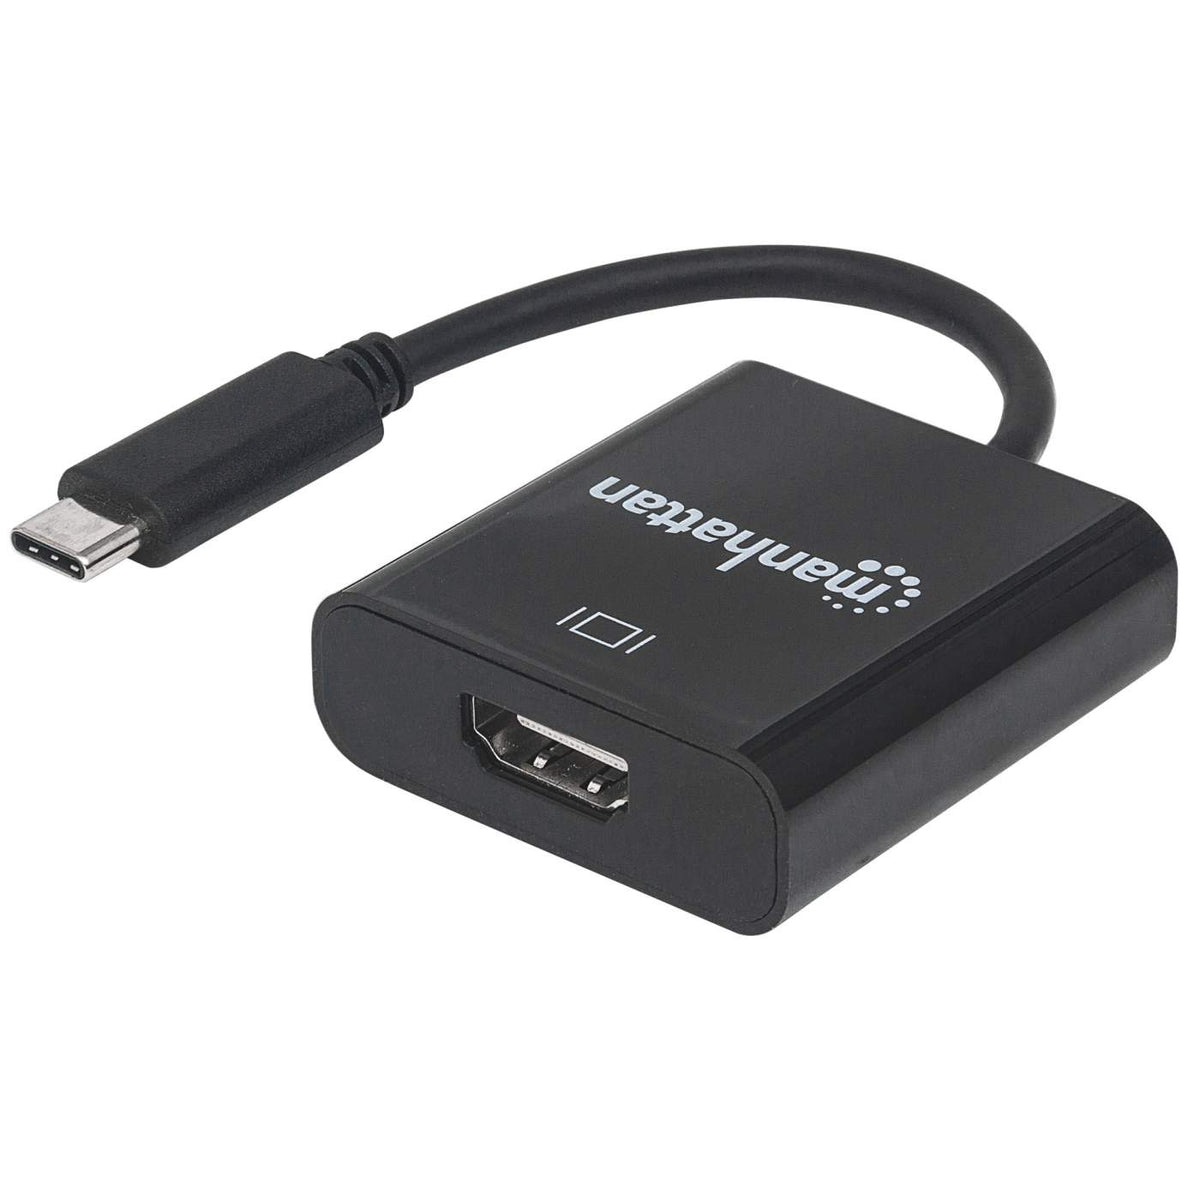 Manhattan 4K@30Hz USB-C to HDMI Adapter (151788)